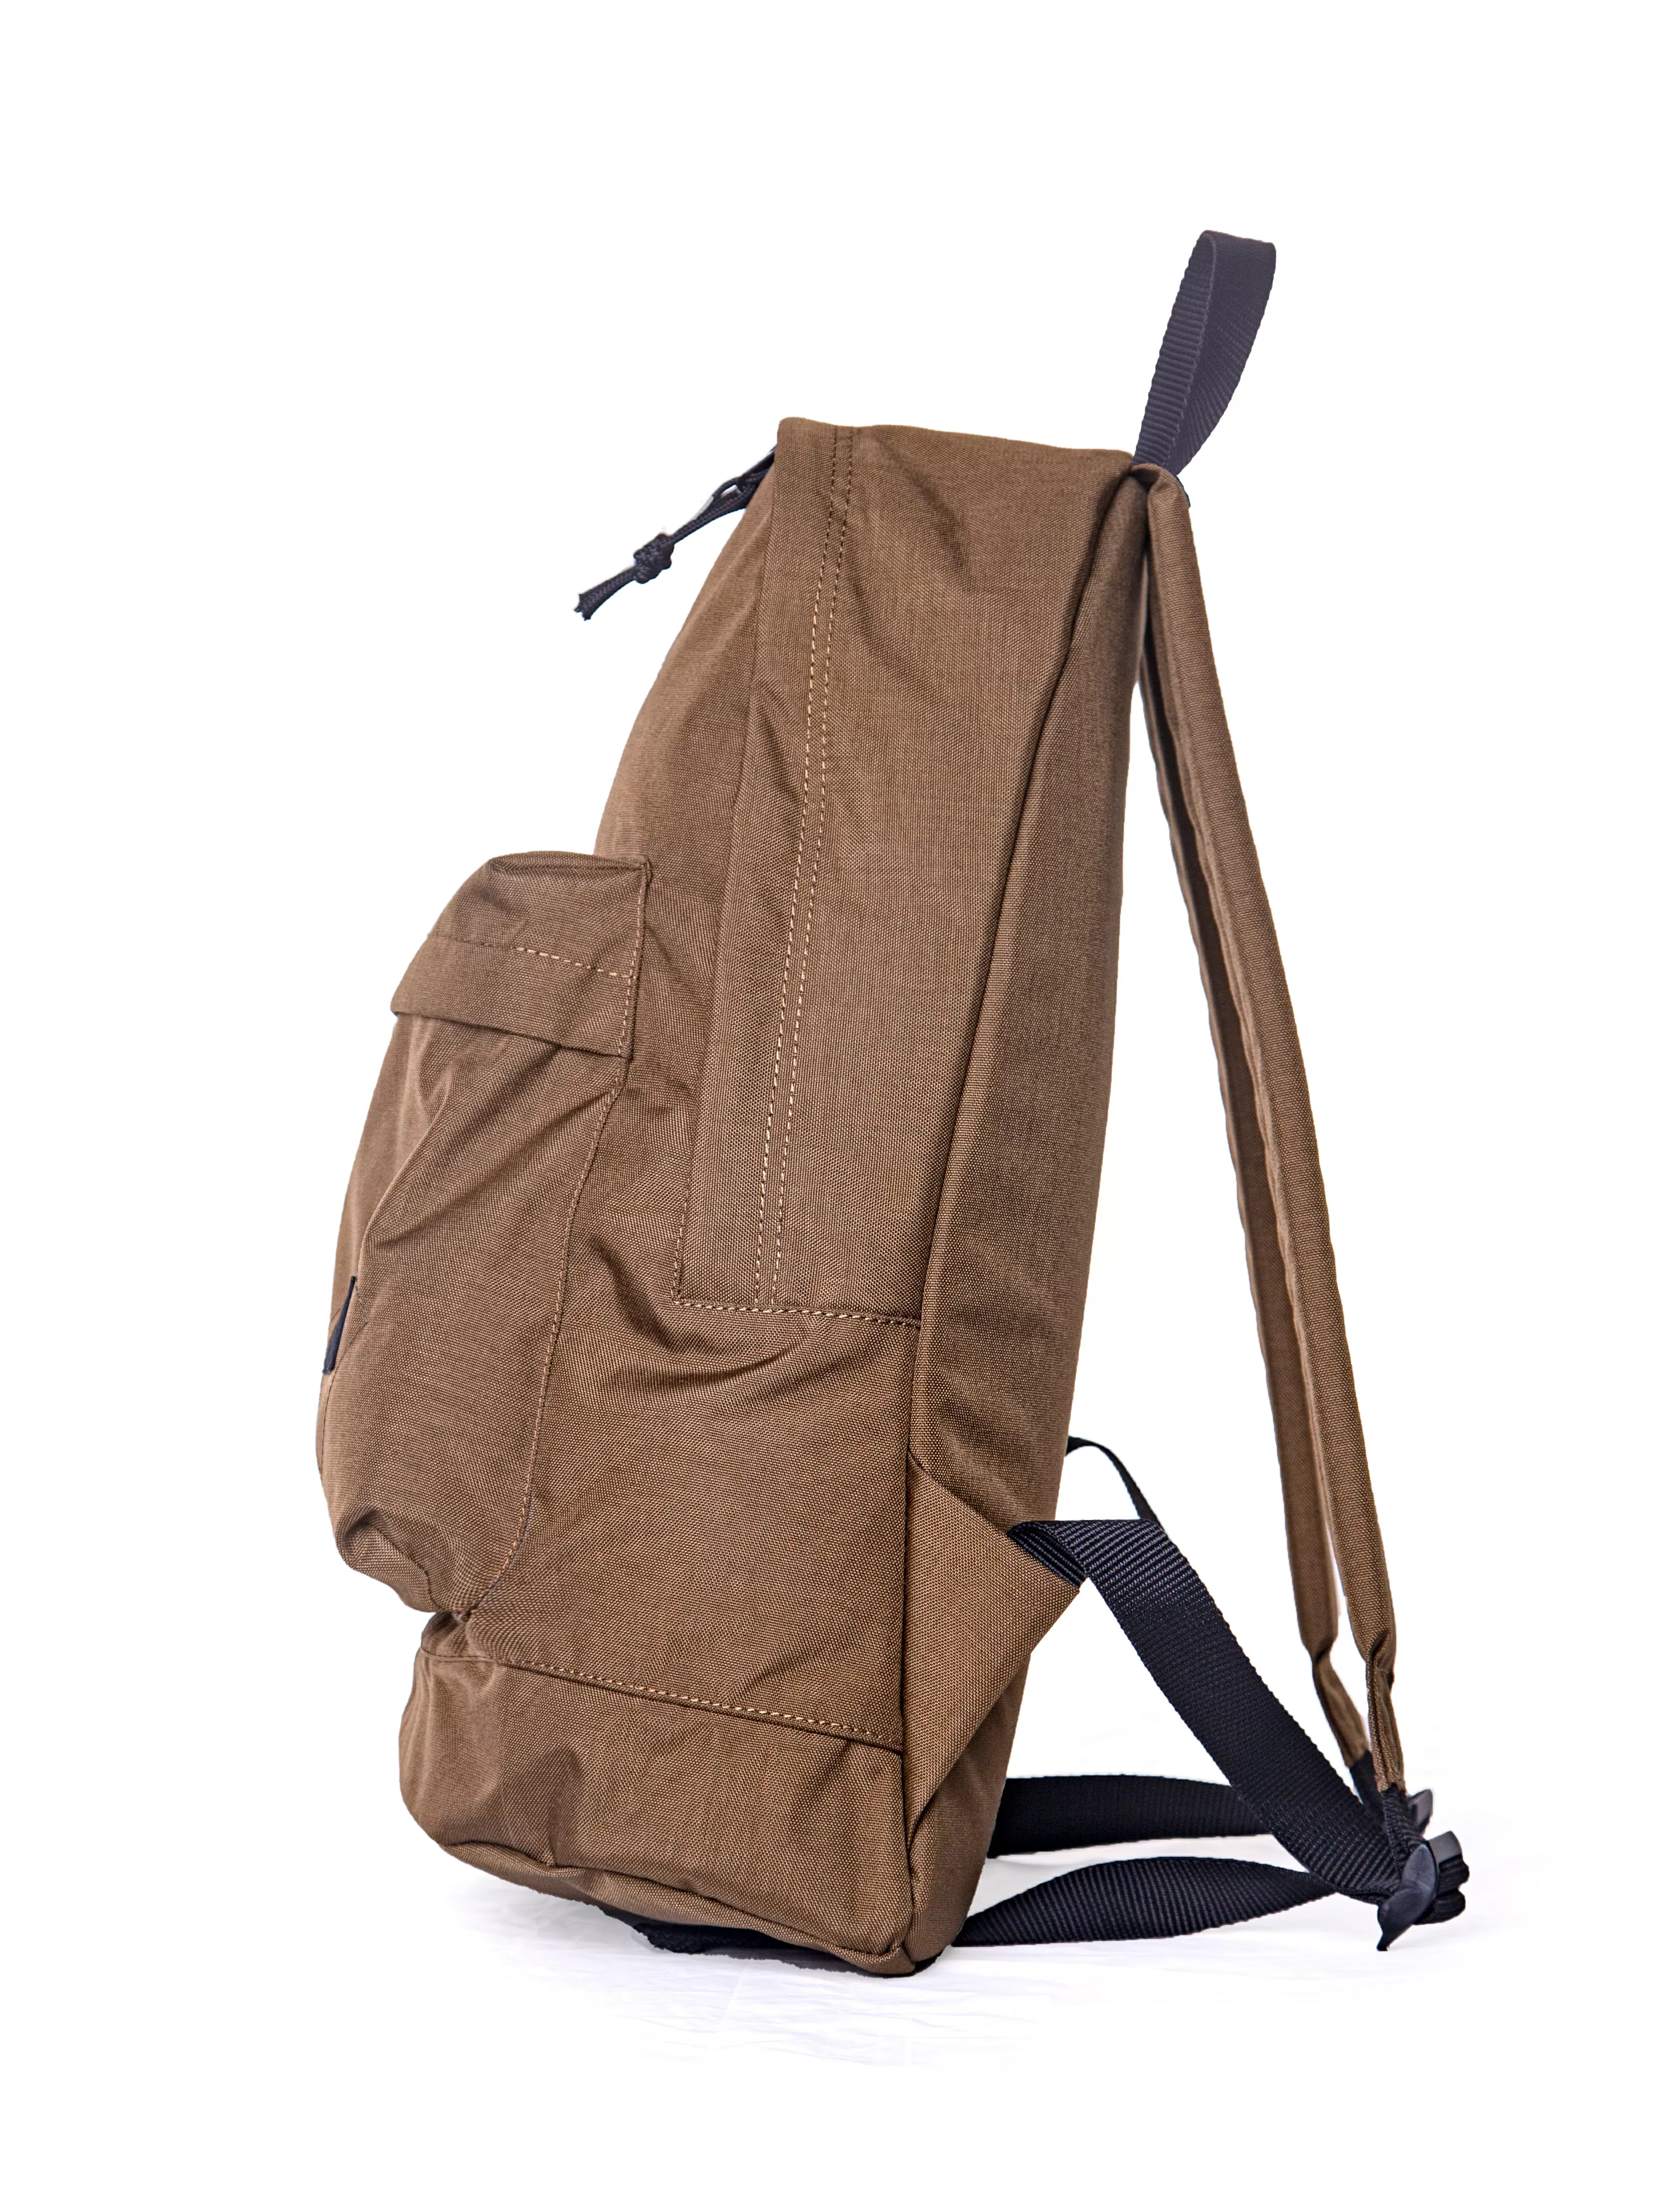 Рюкзак Daypack m светло-коричневый